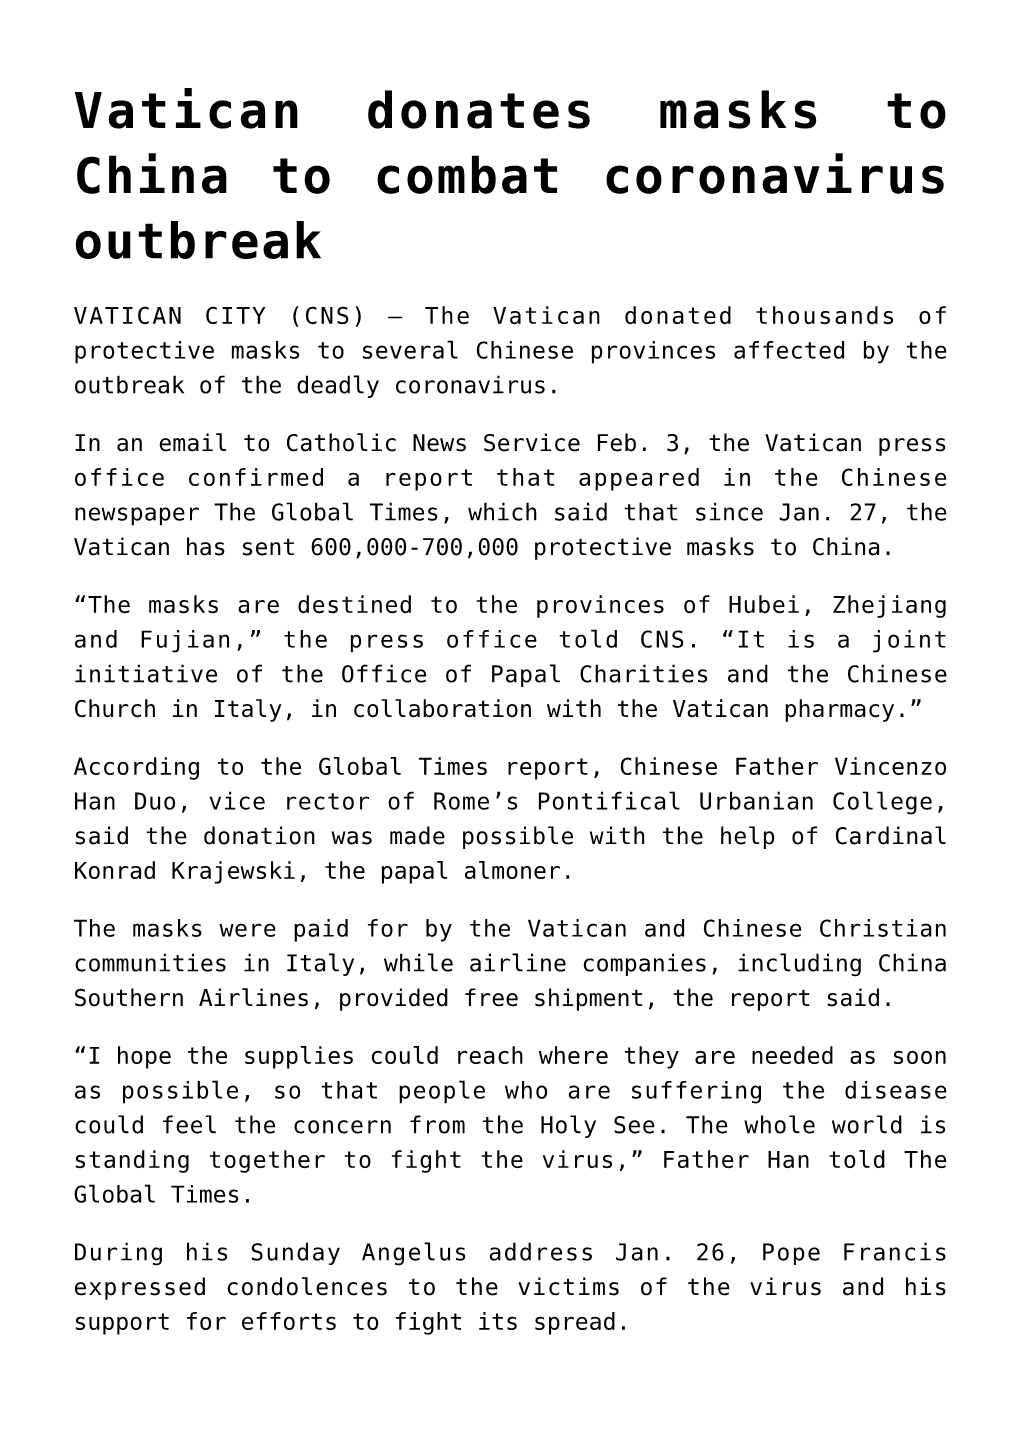 Vatican Donates Masks to China to Combat Coronavirus Outbreak